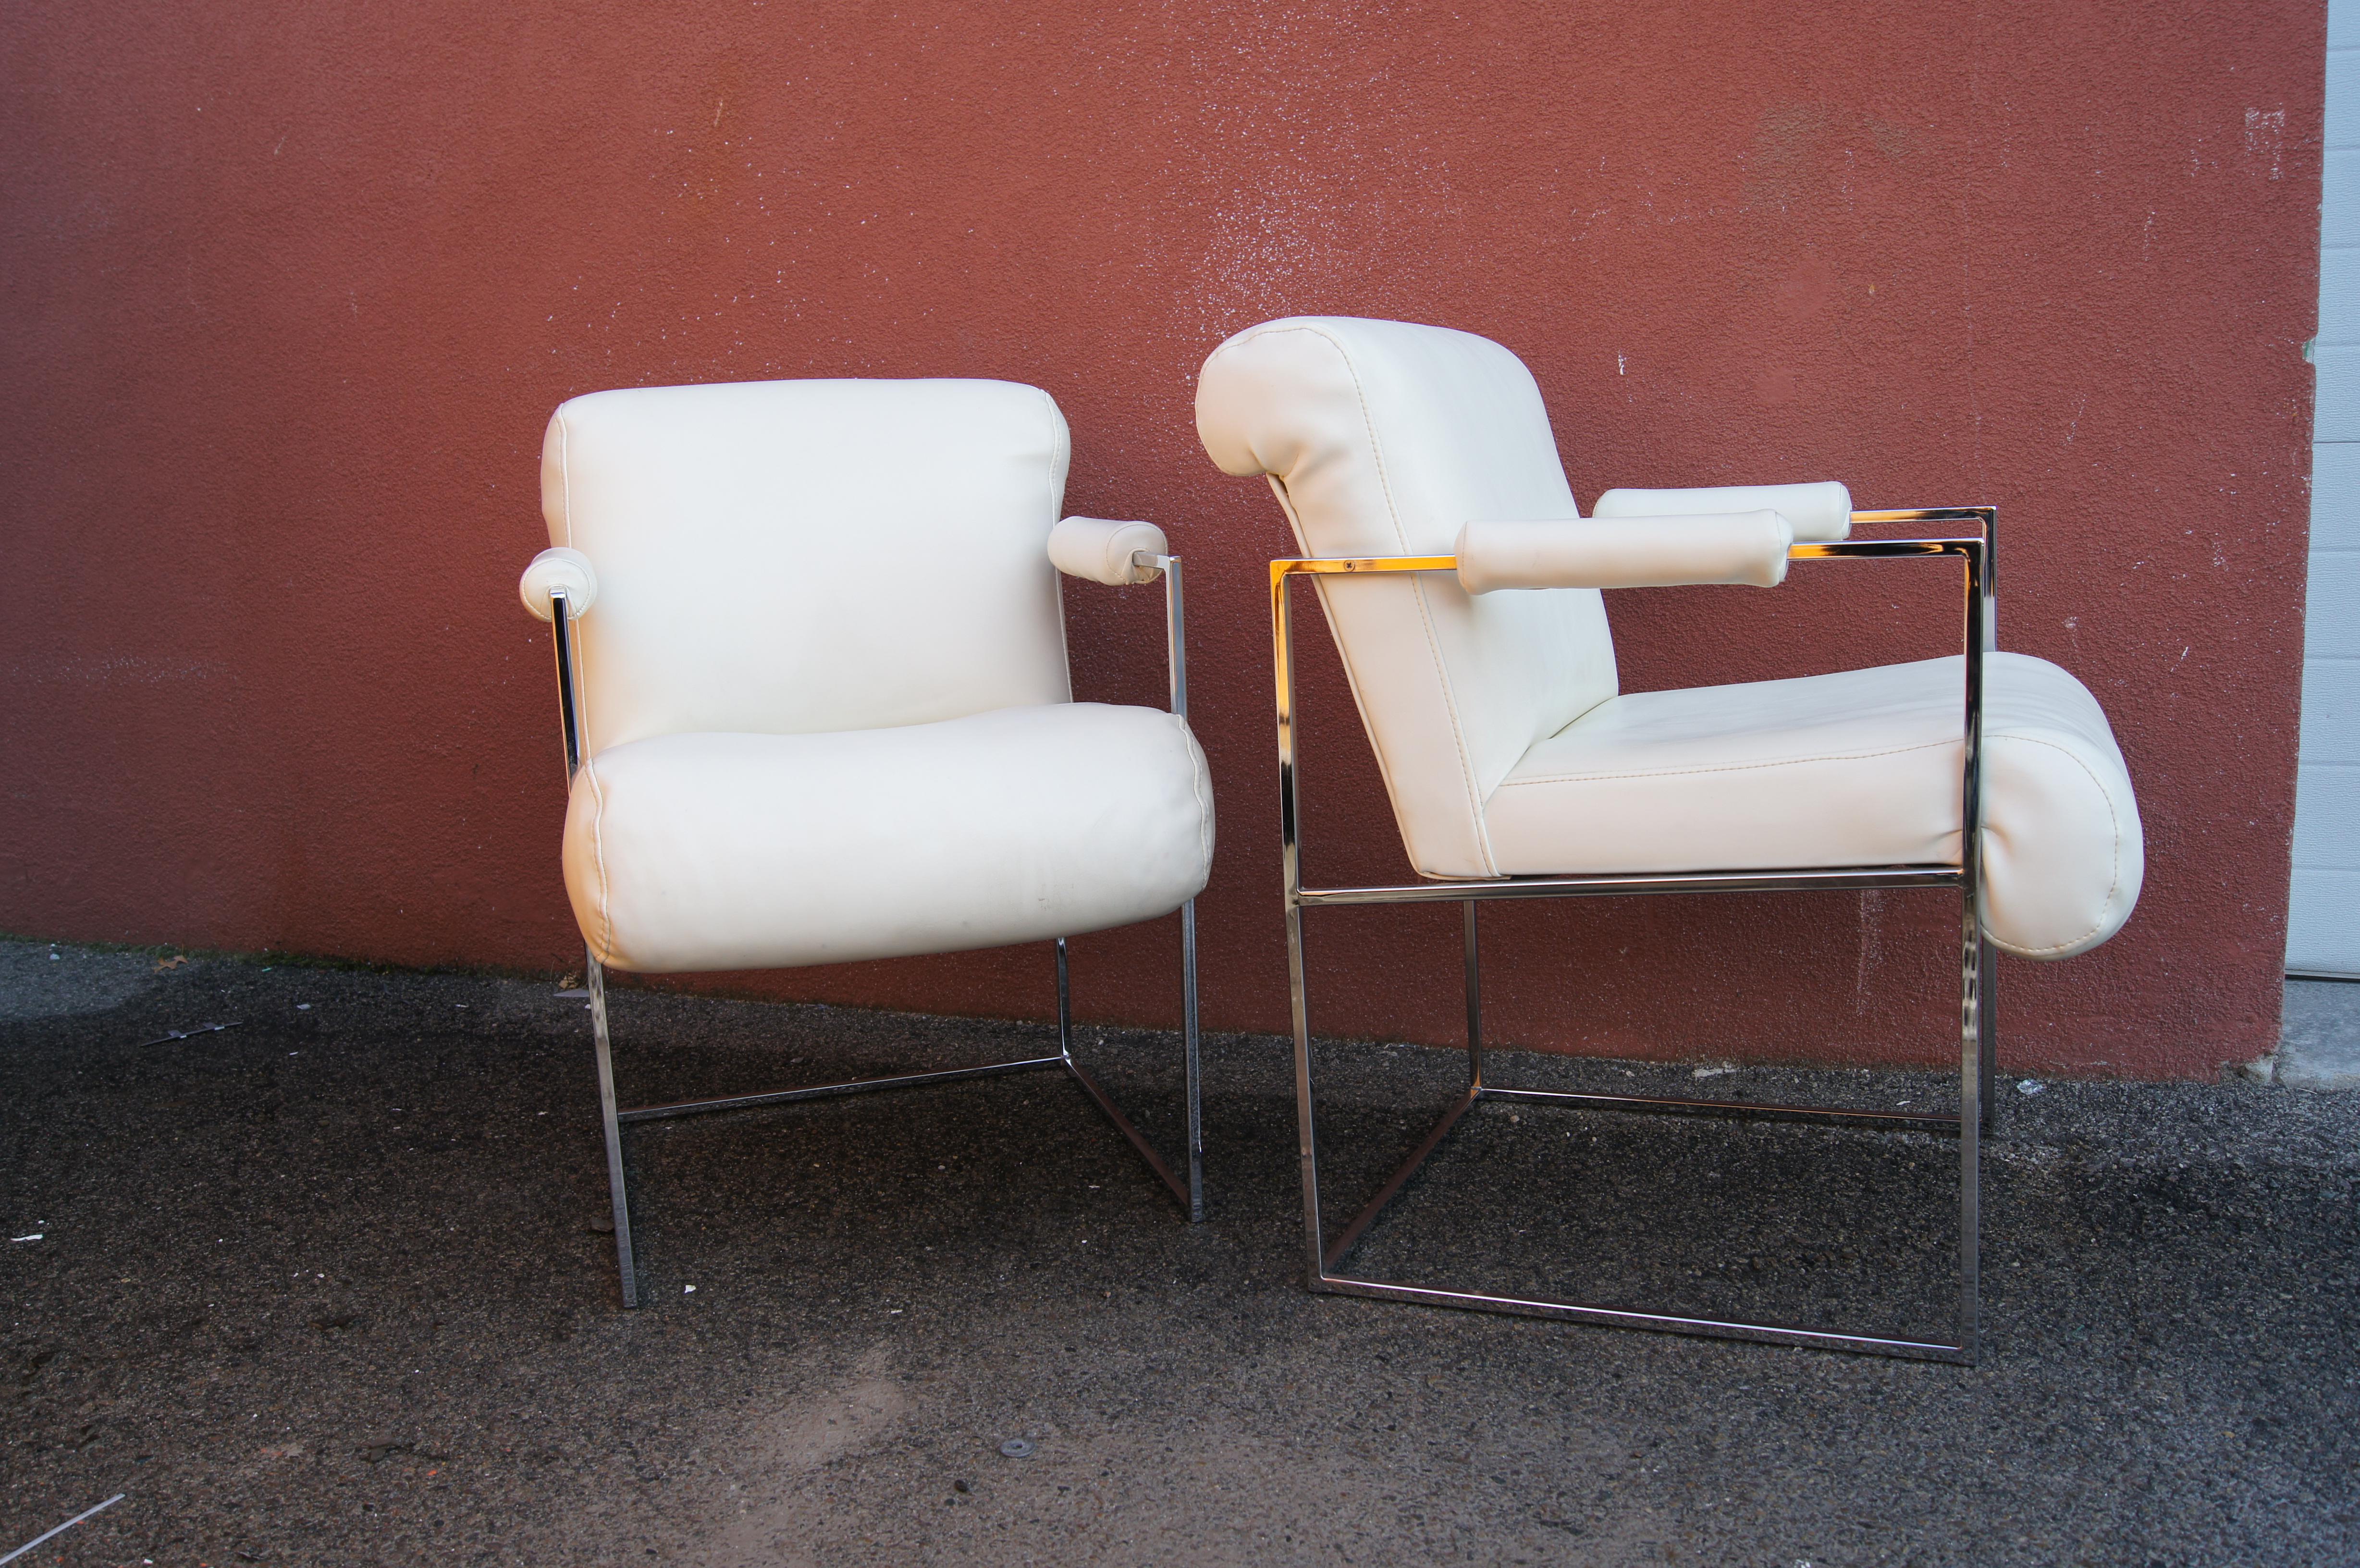 Conçue par Milo Baughman dans le cadre de la collection Thin Line pour Thayer Coggin, cette paire de fauteuils saisissante présente des cadres rectangulaires fins en chrome avec des accoudoirs cylindriques rembourrés. Les sièges rembourrés en vinyle